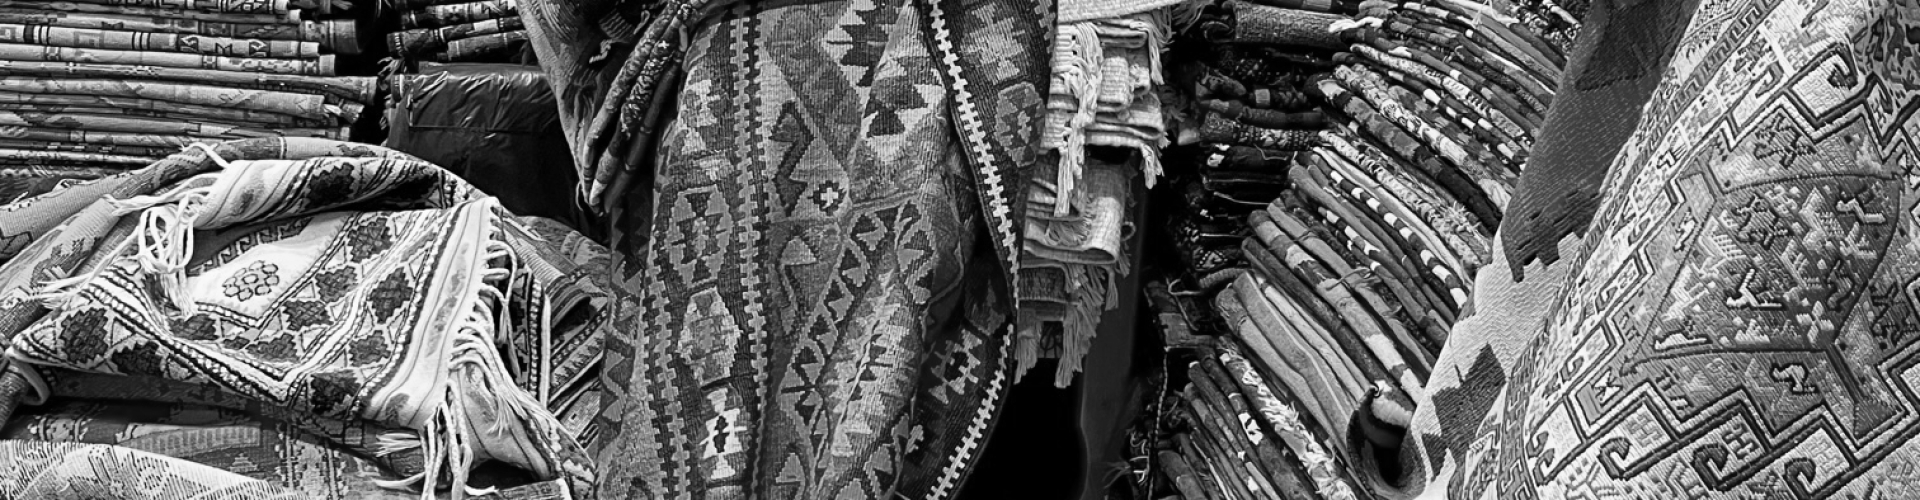 winkel tapijten kleden handgeknoopt izmir centrum turkije